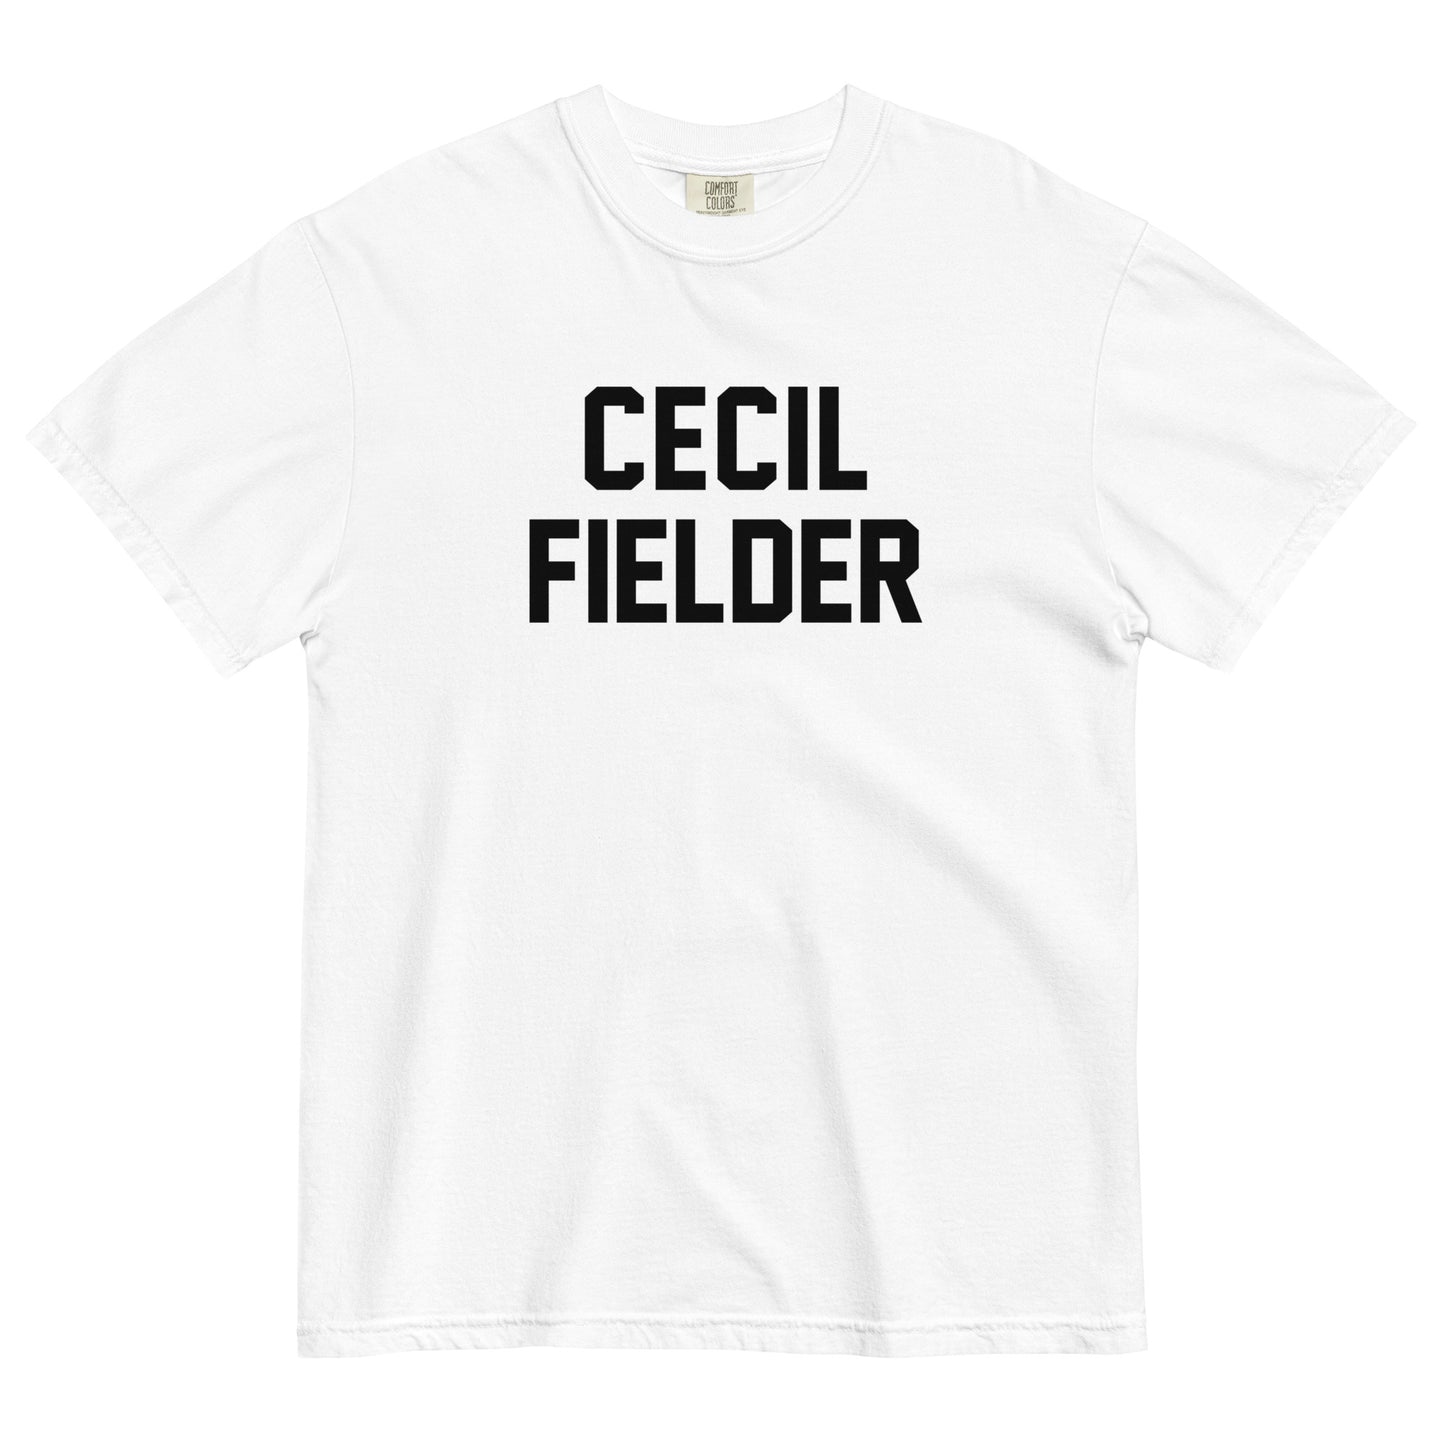 CECIL FIELDER